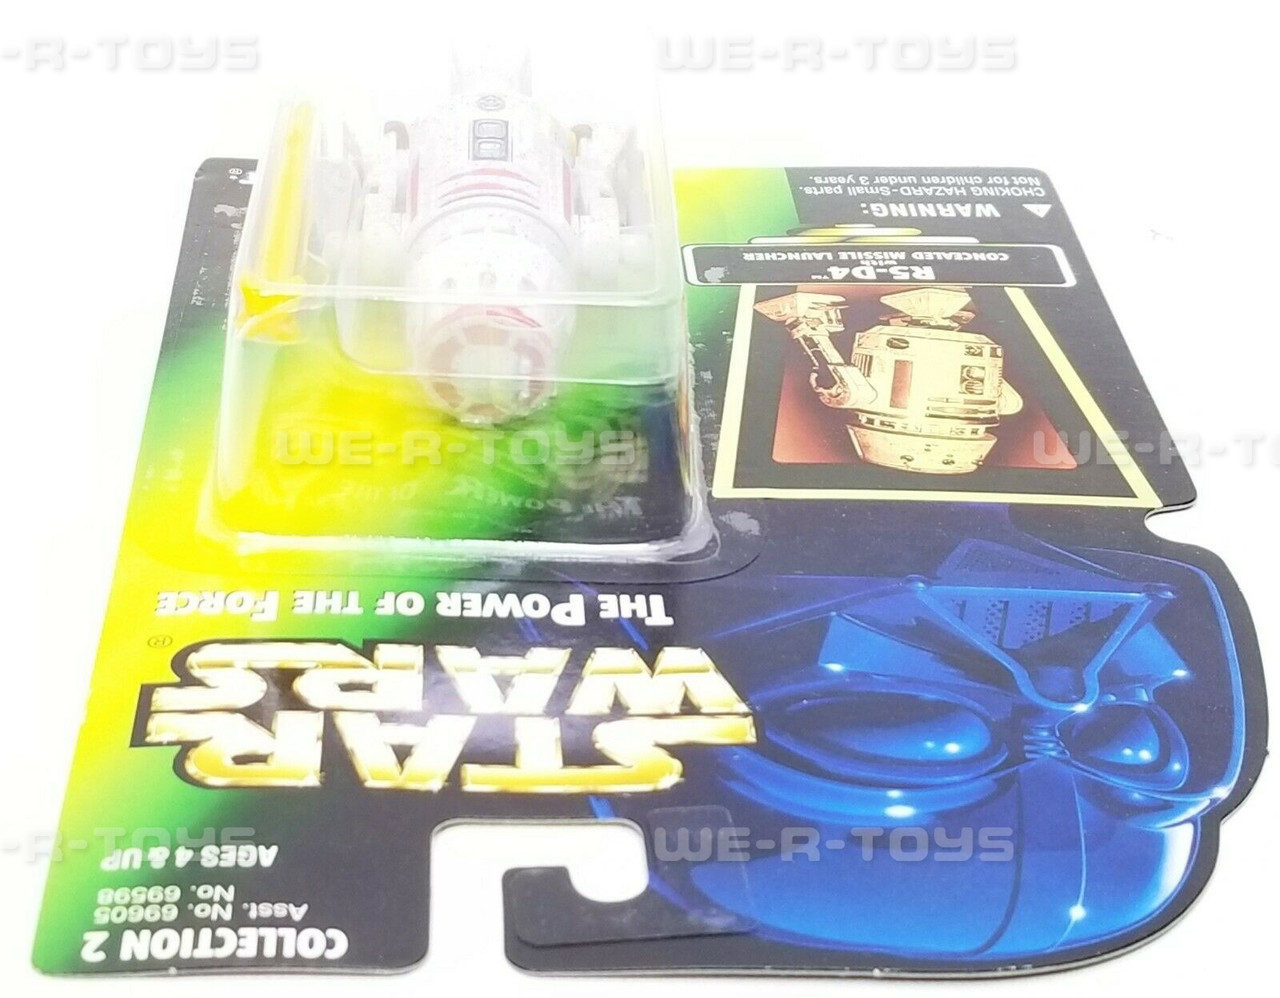 Star Wars - West End Games Miniatures - Heroes 2 - 40402 - 25mm - 1992